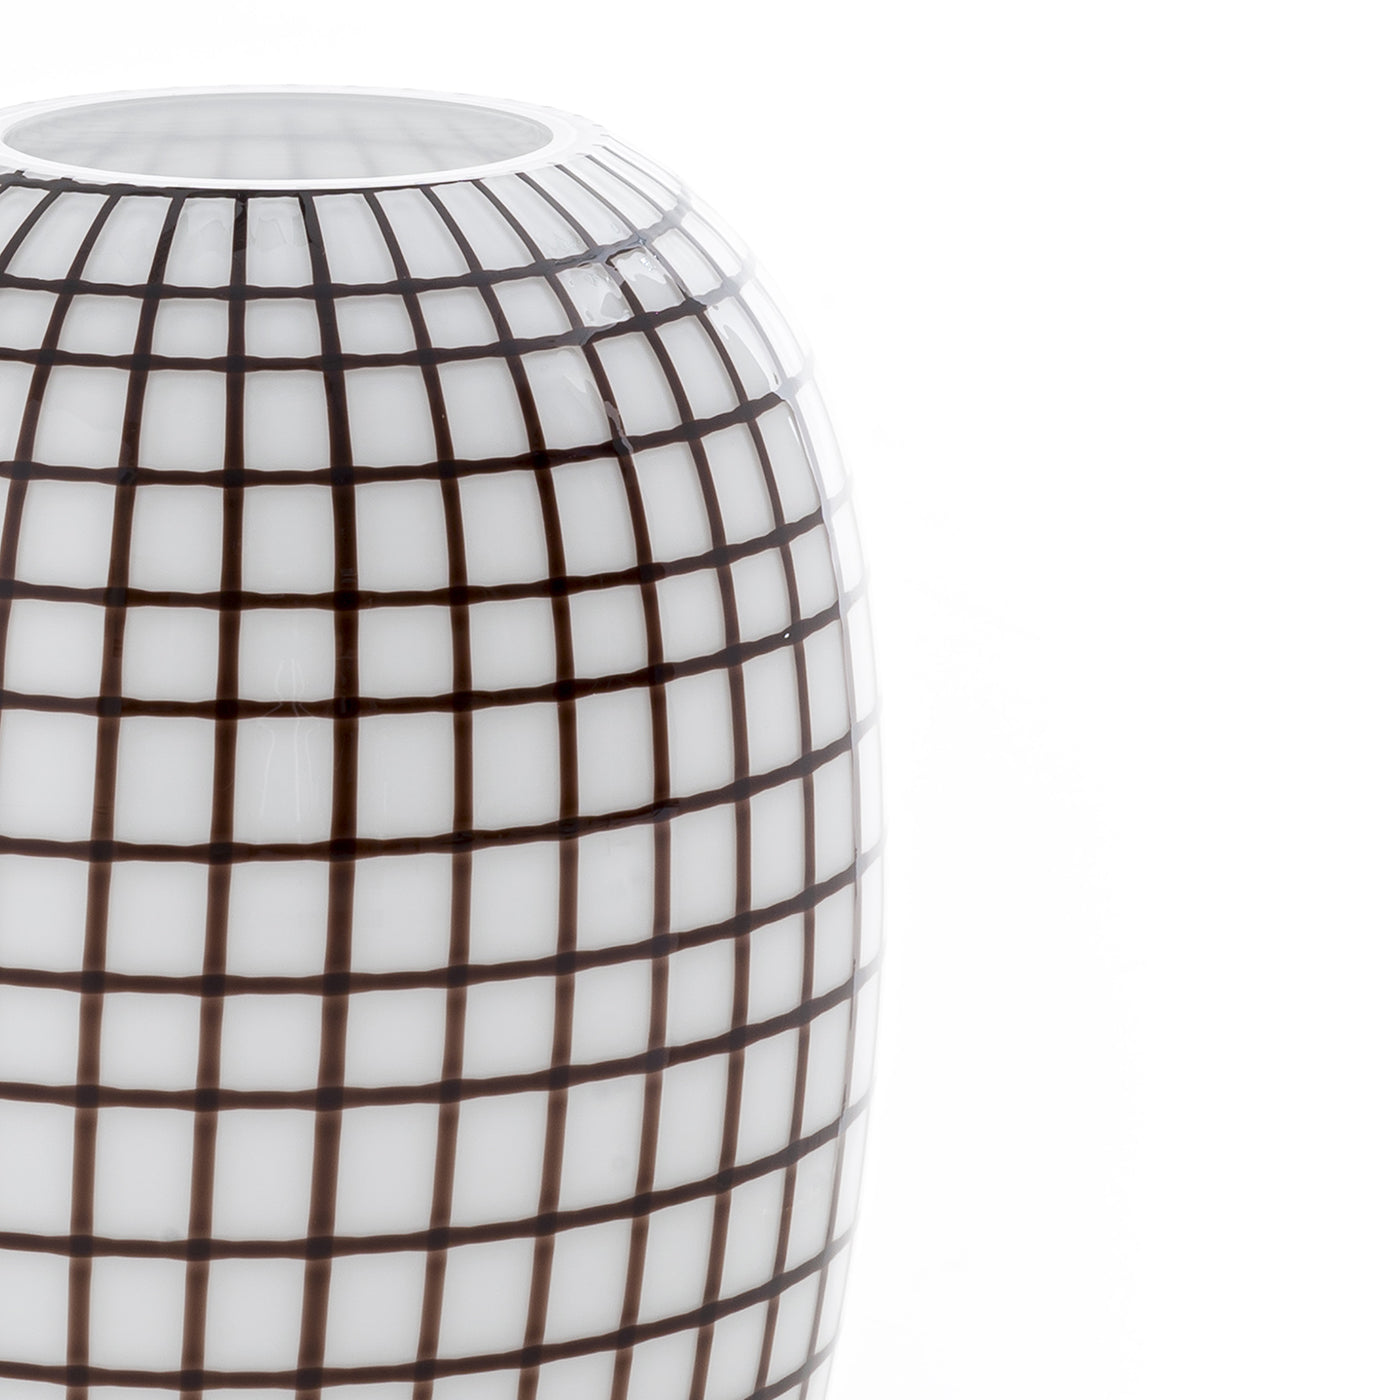 Schwarz-weiße Vase mit Gitter - Alternative Ansicht 2